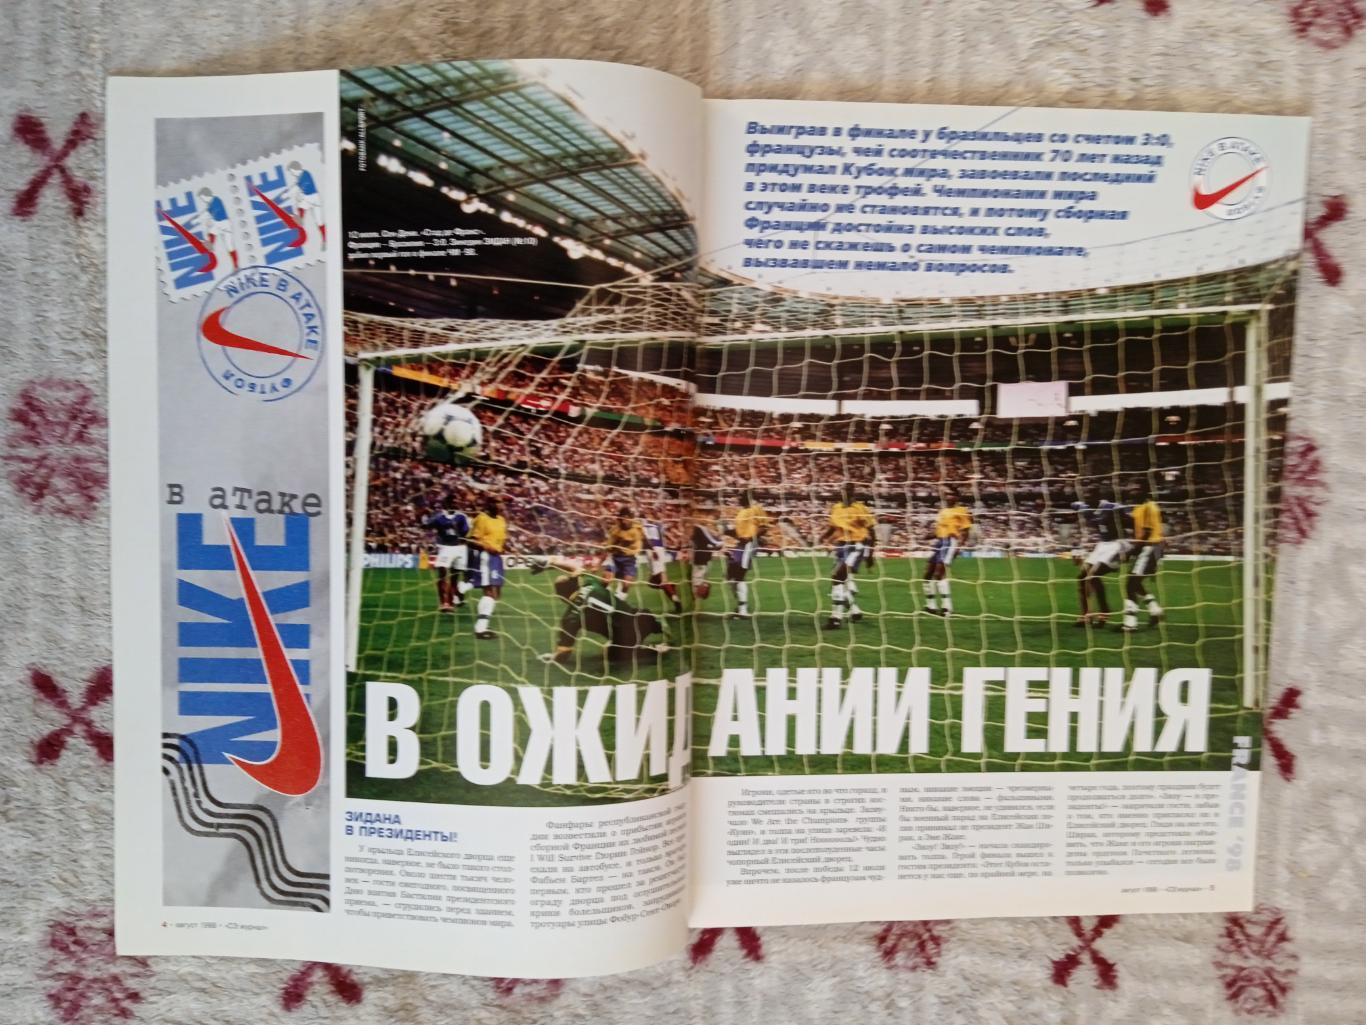 Журнал.Спорт-Экспресс № 8 август 1998 г. (ЧМ 1998 Франция). 1